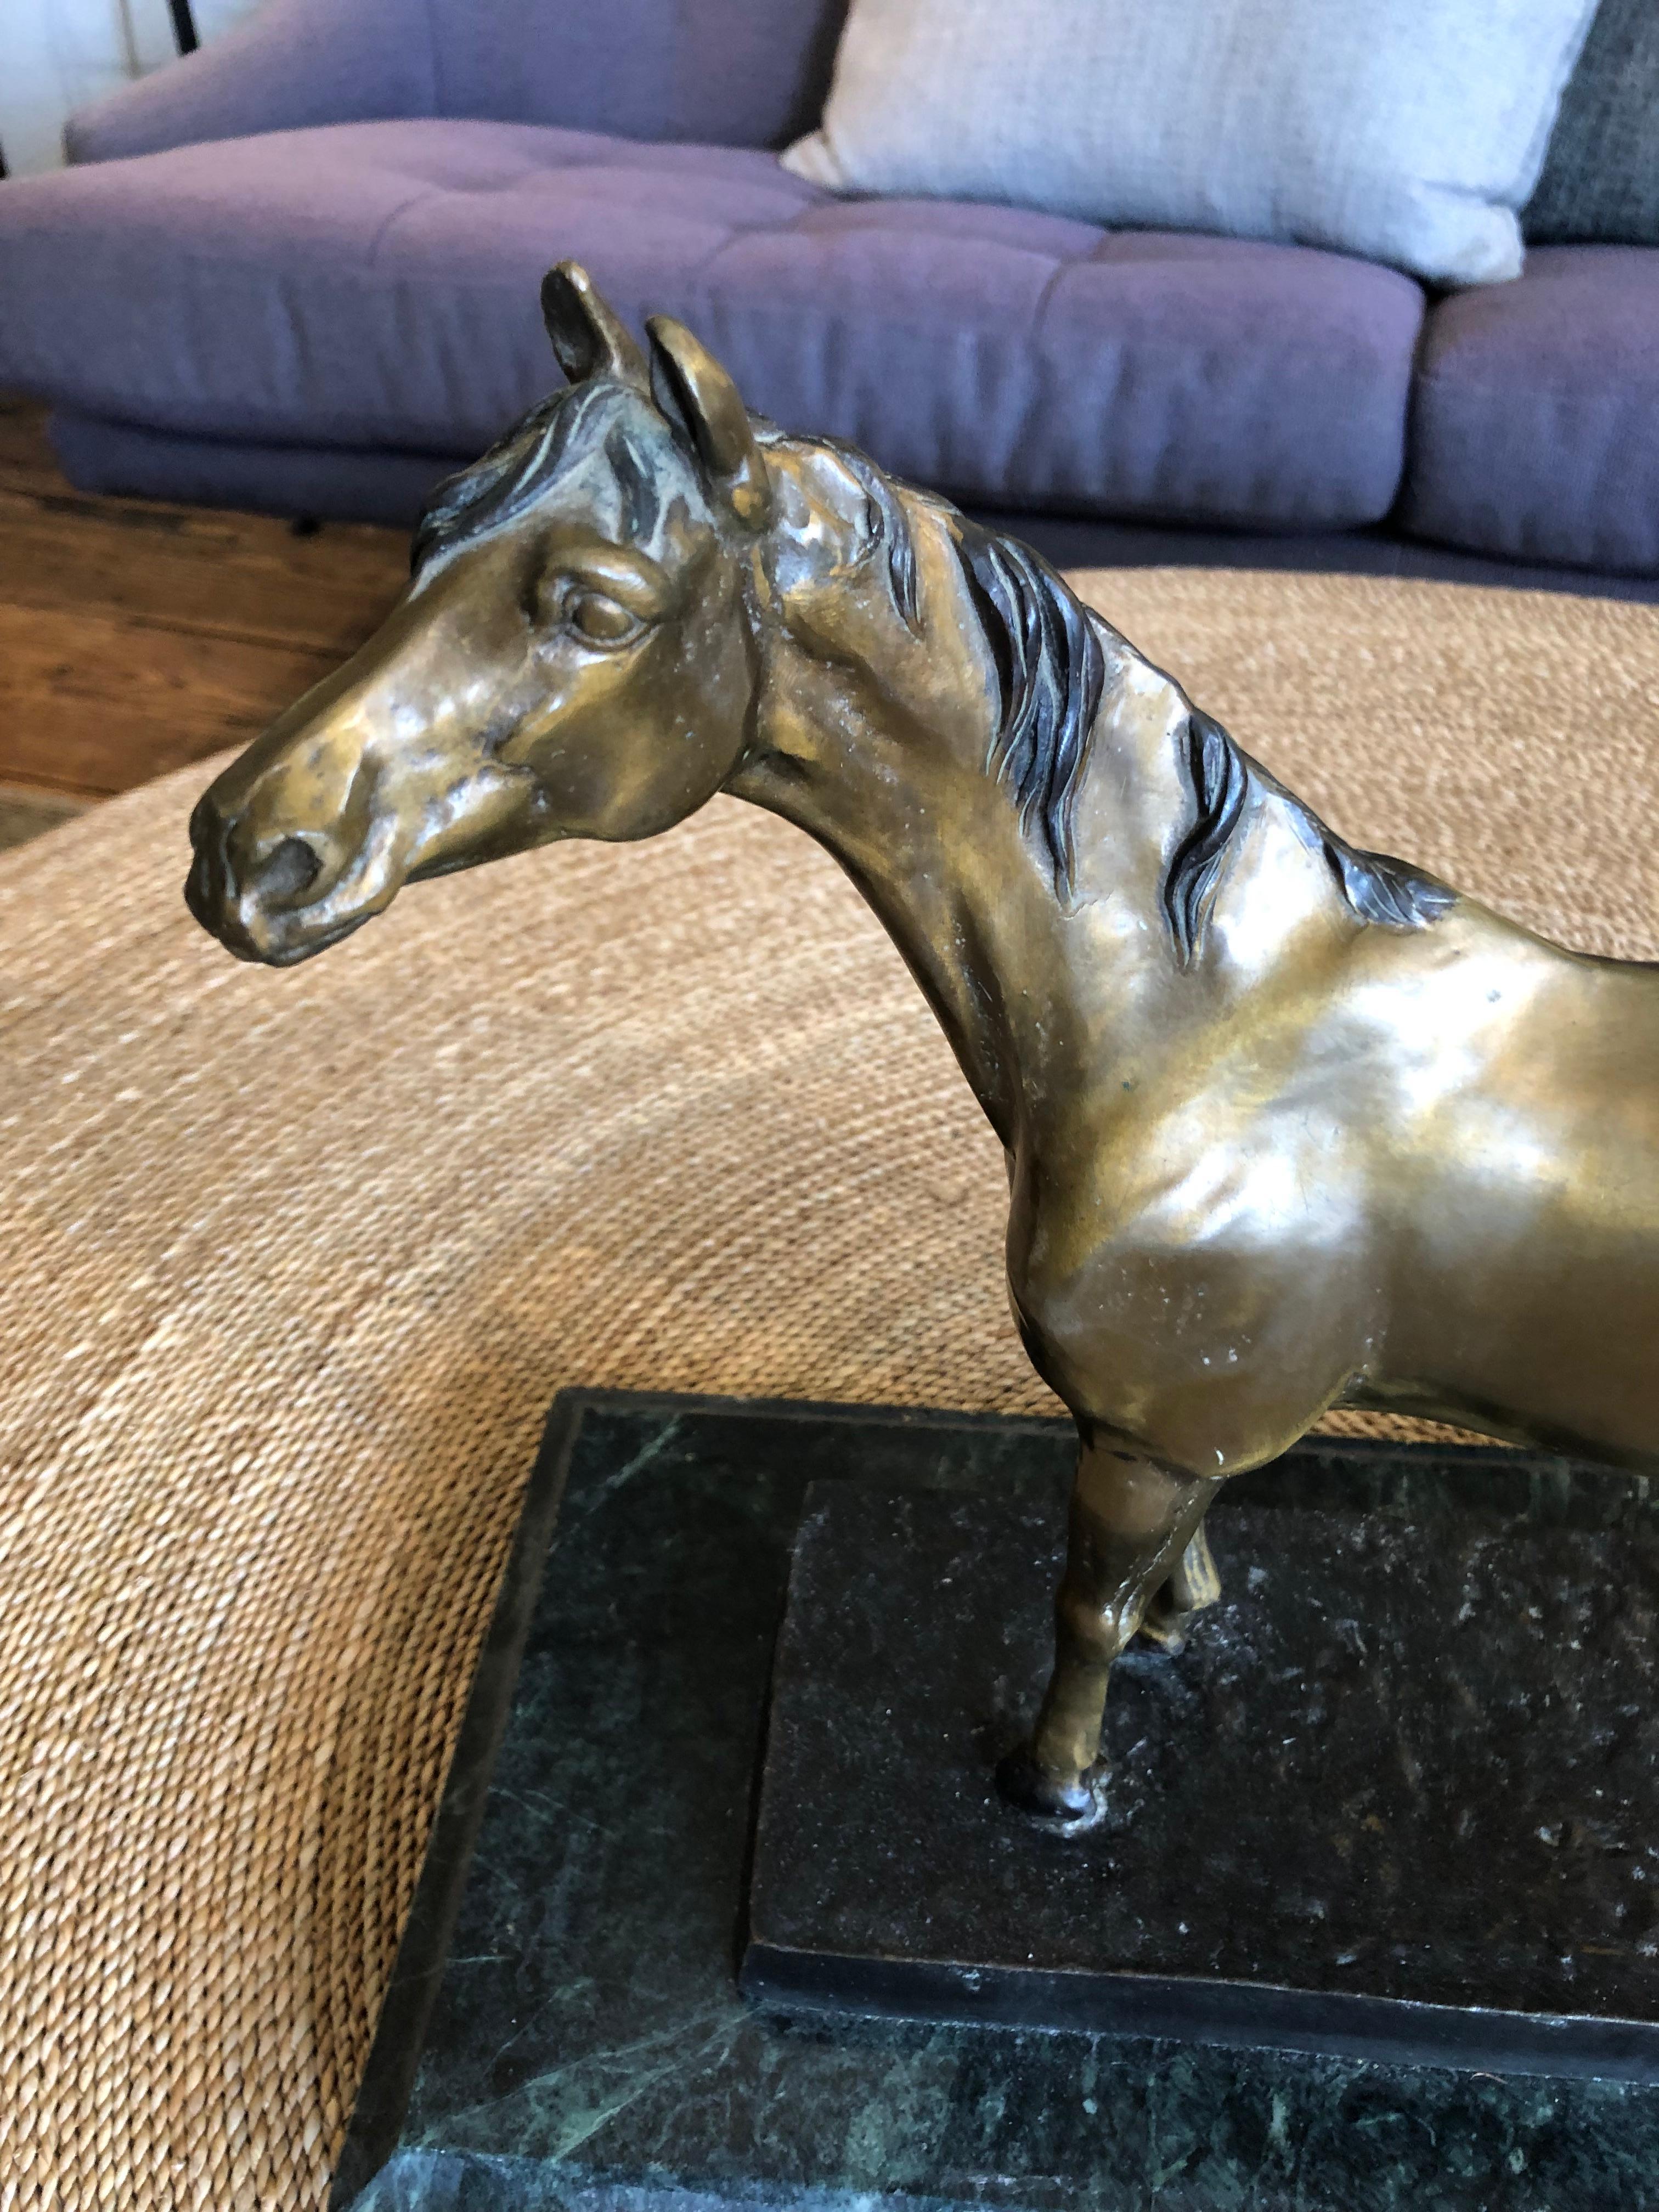 Magnifique sculpture en bronze d'un cheval monté sur marbre par  Cyrus Dallin (1861-1944), célèbre sculpteur né dans l'Utah, éducateur et défenseur des droits des autochtones, a vécu et travaillé à Arlington, dans le Massachusetts, pendant plus de